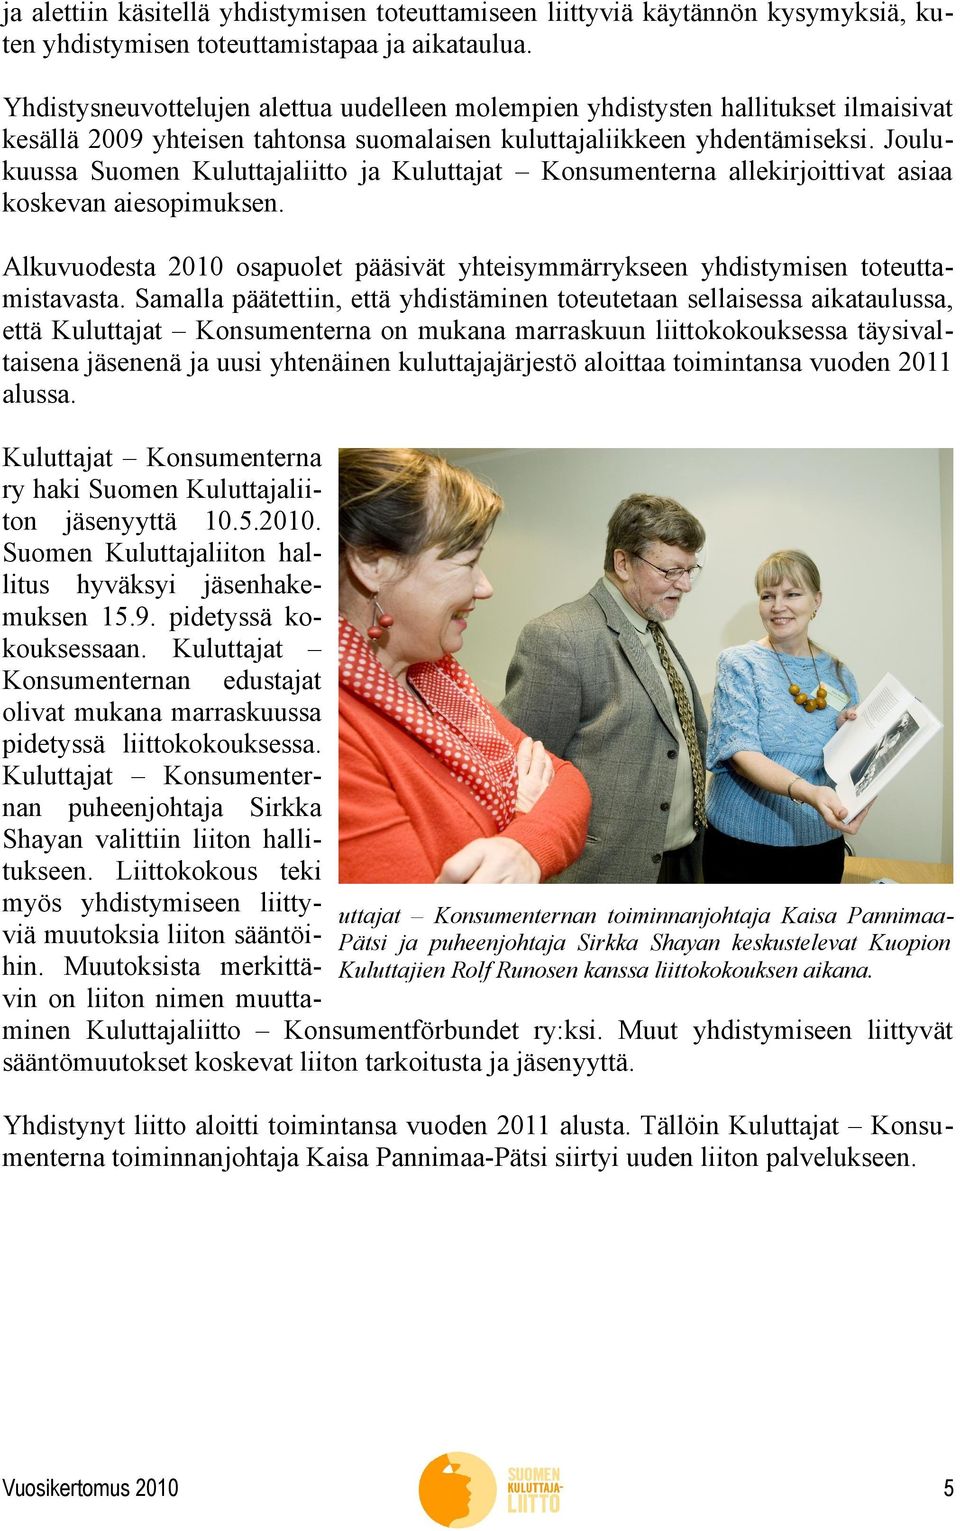 Joulukuussa Suomen Kuluttajaliitto ja Kuluttajat Konsumenterna allekirjoittivat asiaa koskevan aiesopimuksen. Alkuvuodesta 2010 osapuolet pääsivät yhteisymmärrykseen yhdistymisen toteuttamistavasta.